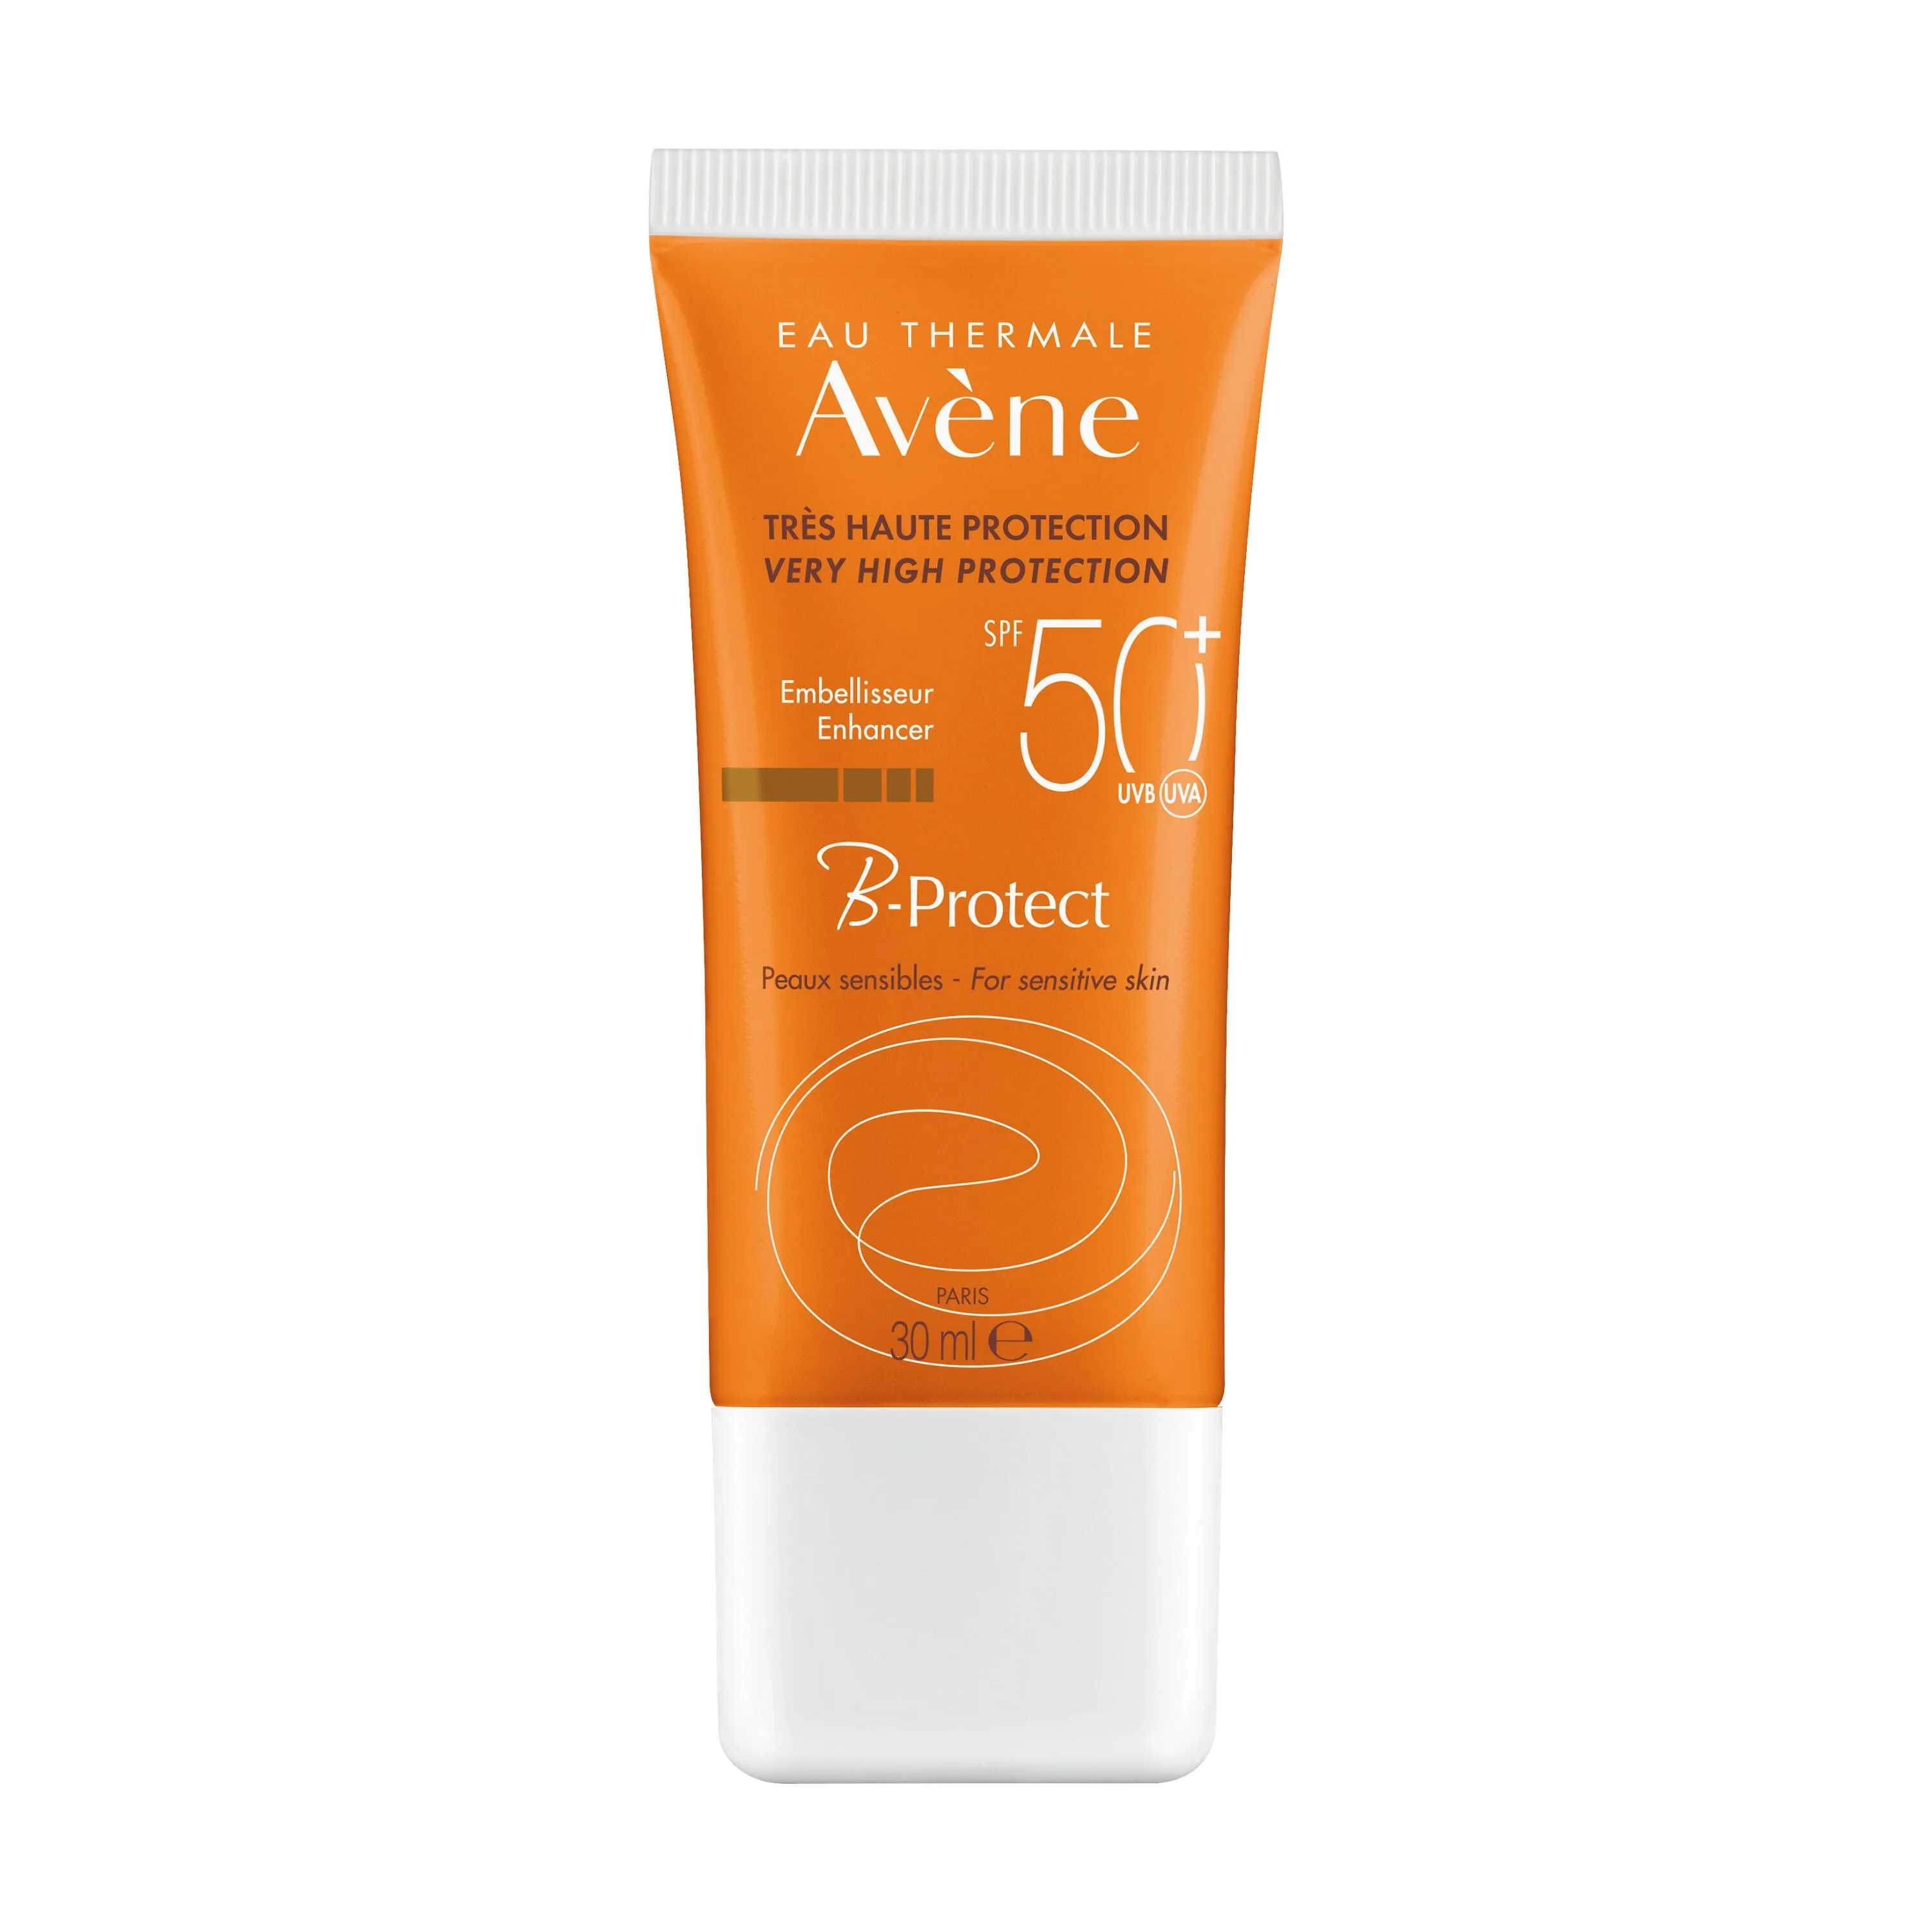 Avene B-protect Trattamento Solare Spf50+ 30ml